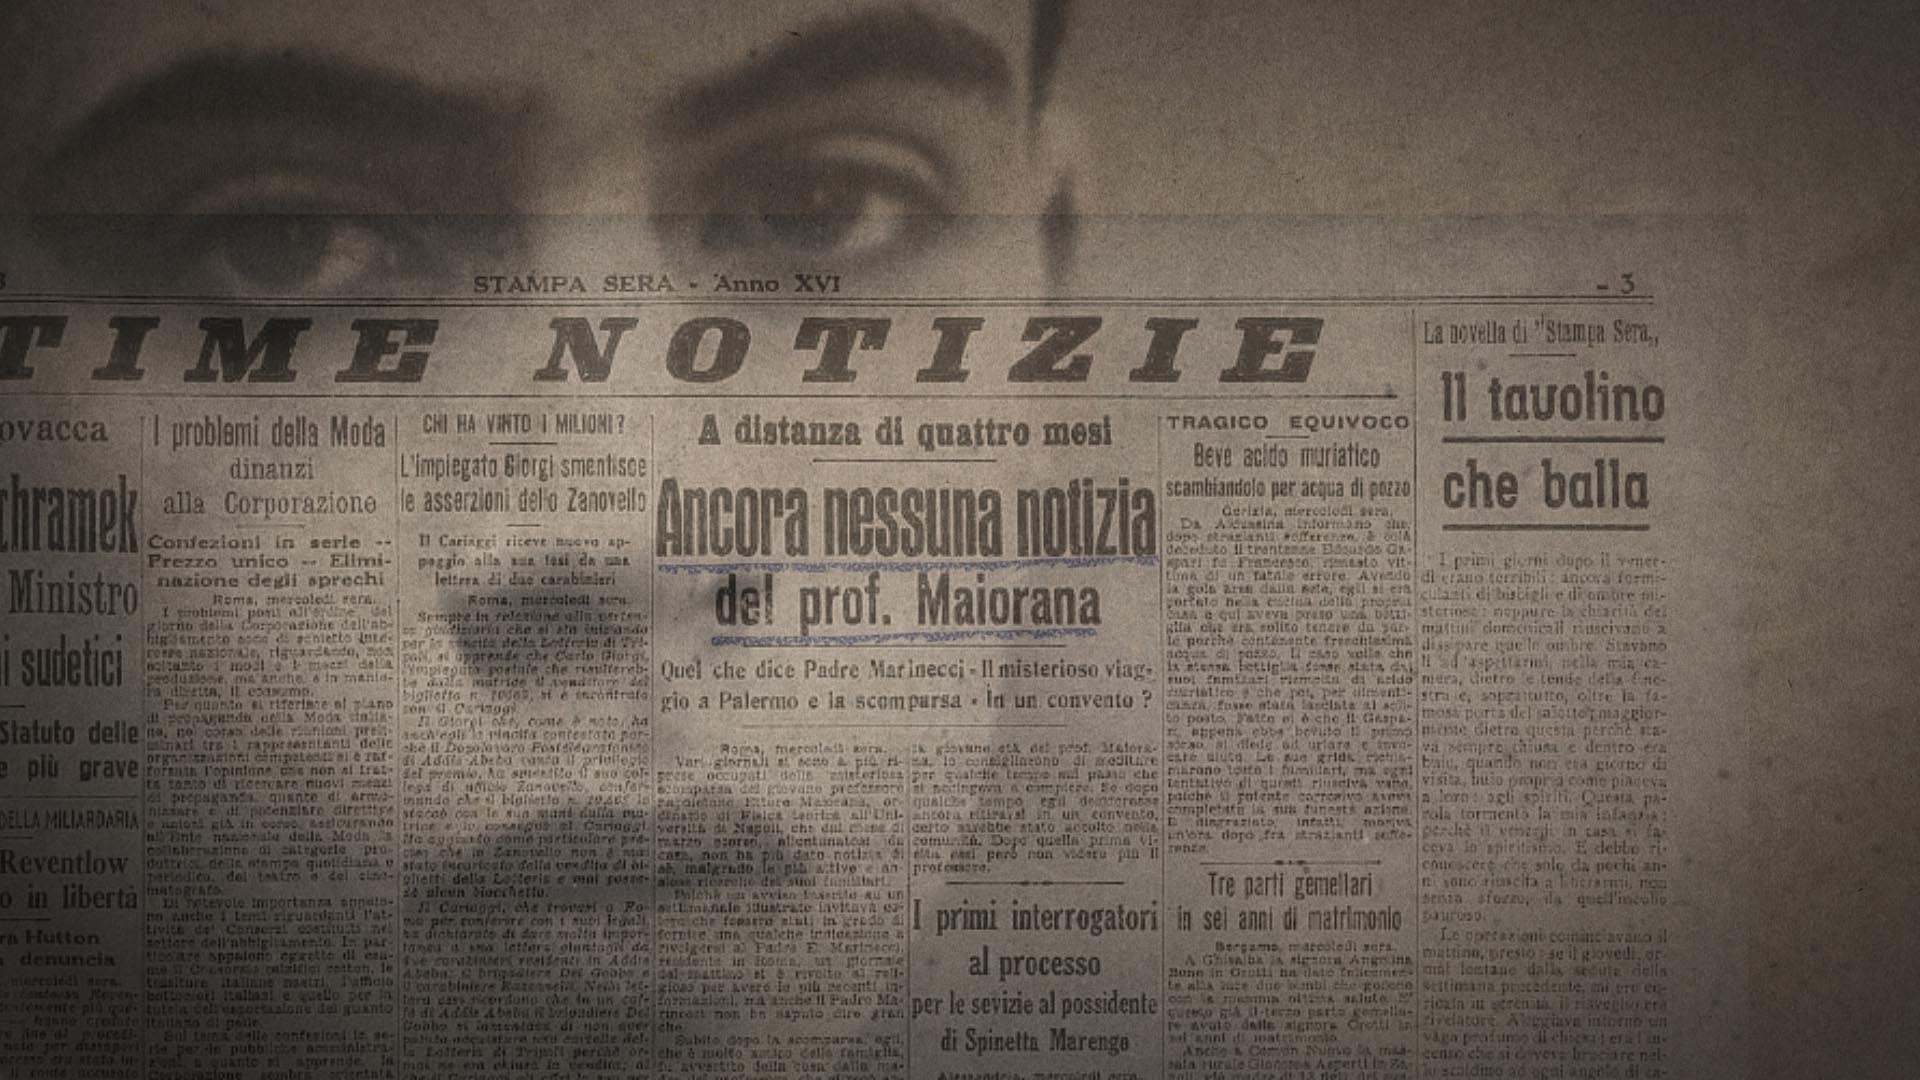 Nessuno mi troverà - La scomparsa di Ettore Majorana [credit: History Channel]